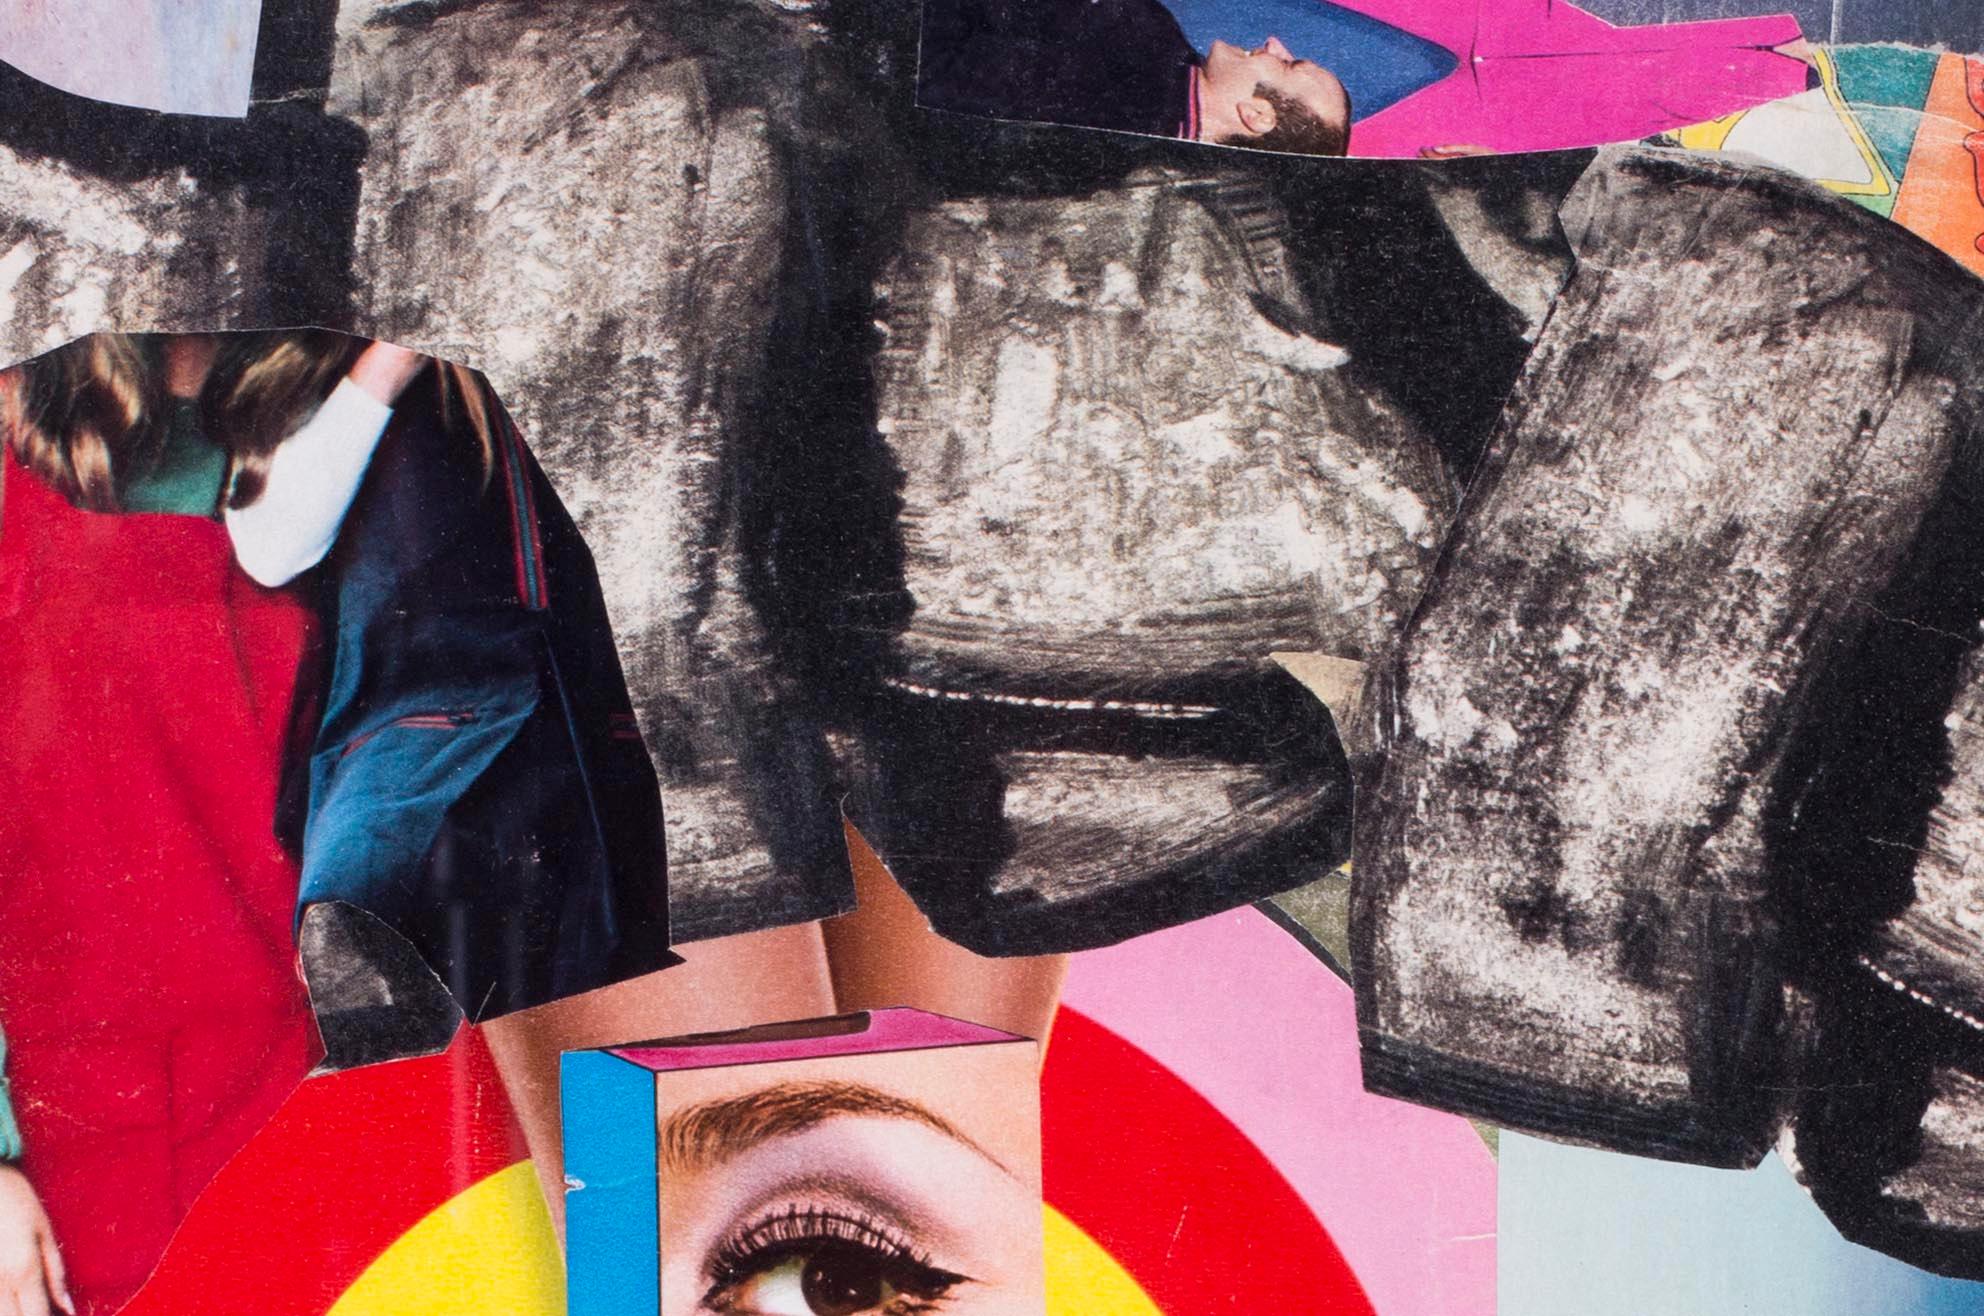 French, 1960s Pop Art Collage 'Teardrop' by French artist Pierre Jourda 2